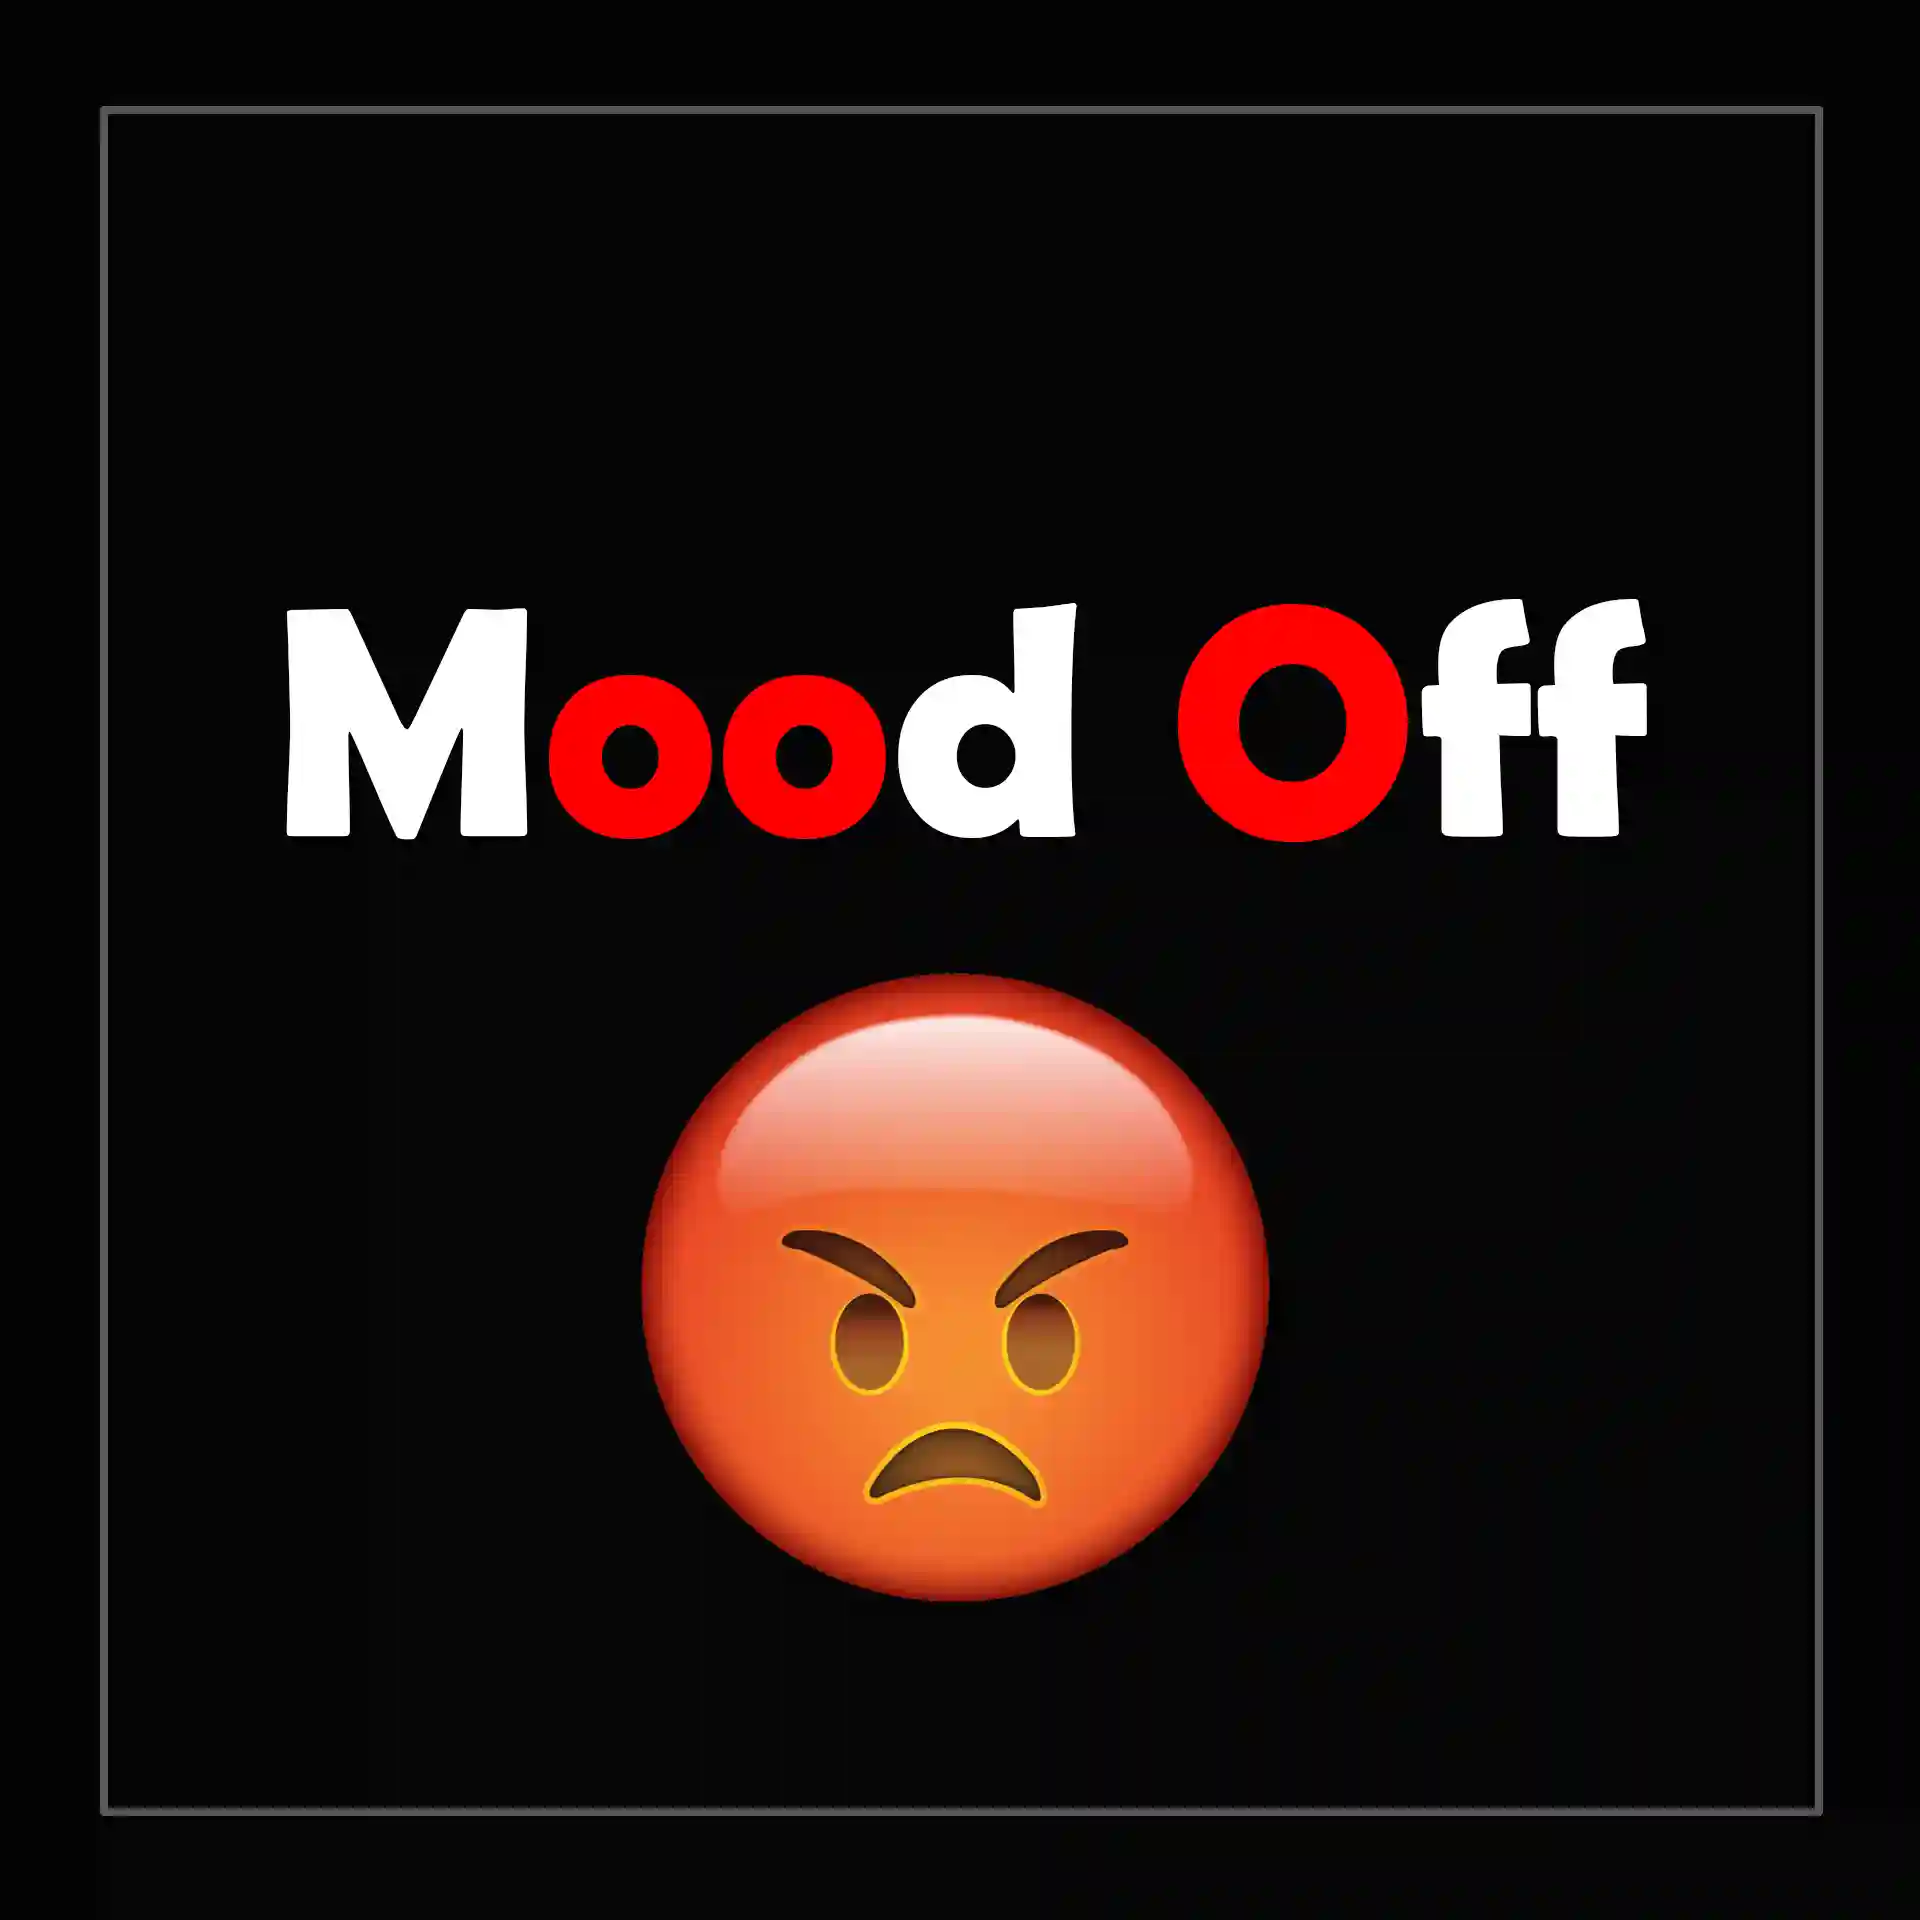 Mood Off DP